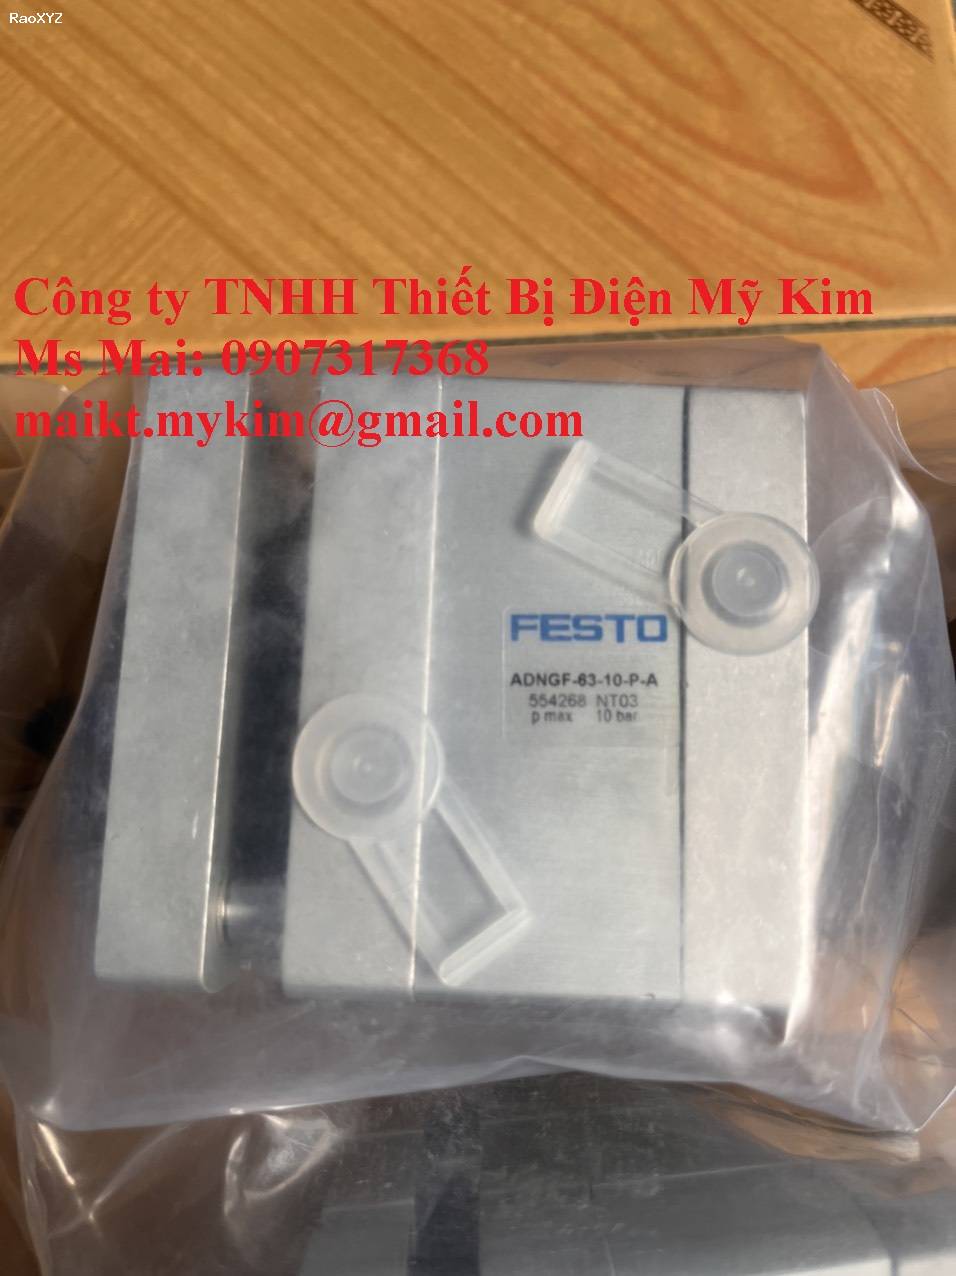 Festo ADNGF-63-10-0-A - Thiết Bị Điện Mỹ Kim 0907317368